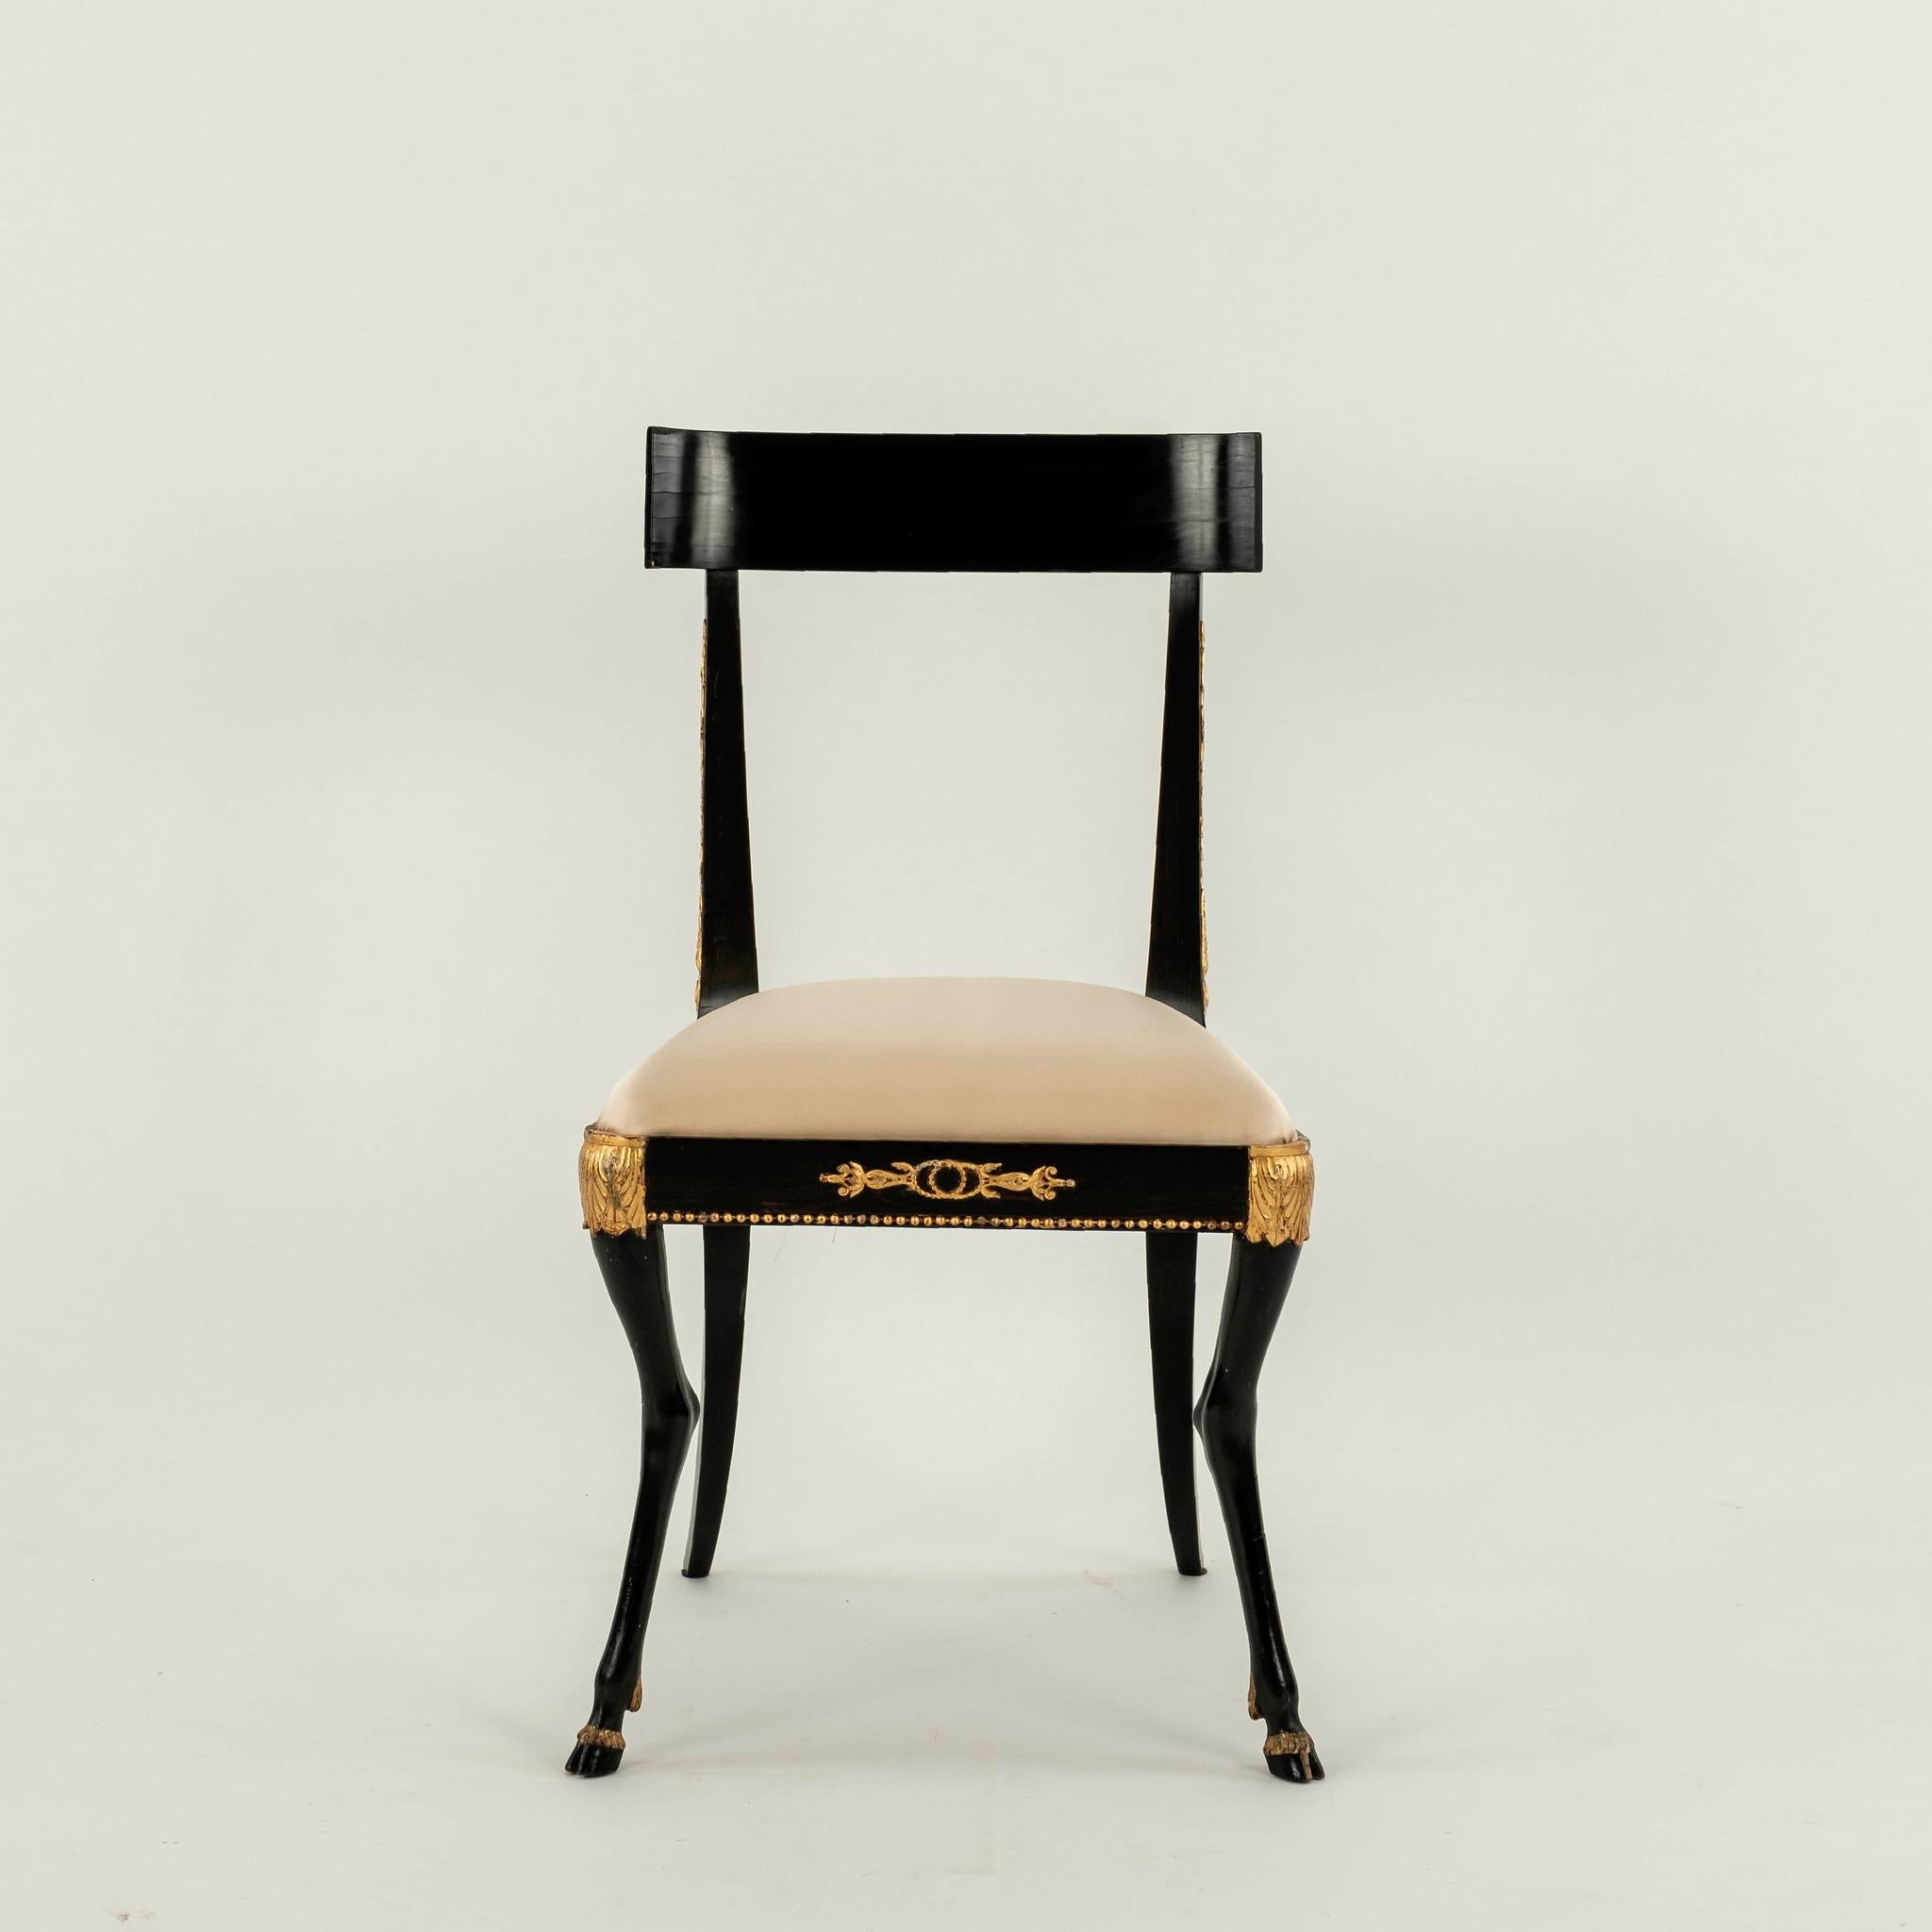 Paar Regency Klismos-Stühle aus dem 19. Jahrhundert. Diese eleganten Stühle haben einen Rahmen aus ebonisiertem Hartholz, klassische vergoldete Details, geschnitzte Pied-de-Biche und neu gepolsterte Sitze aus cremefarbenem Seidensatin.